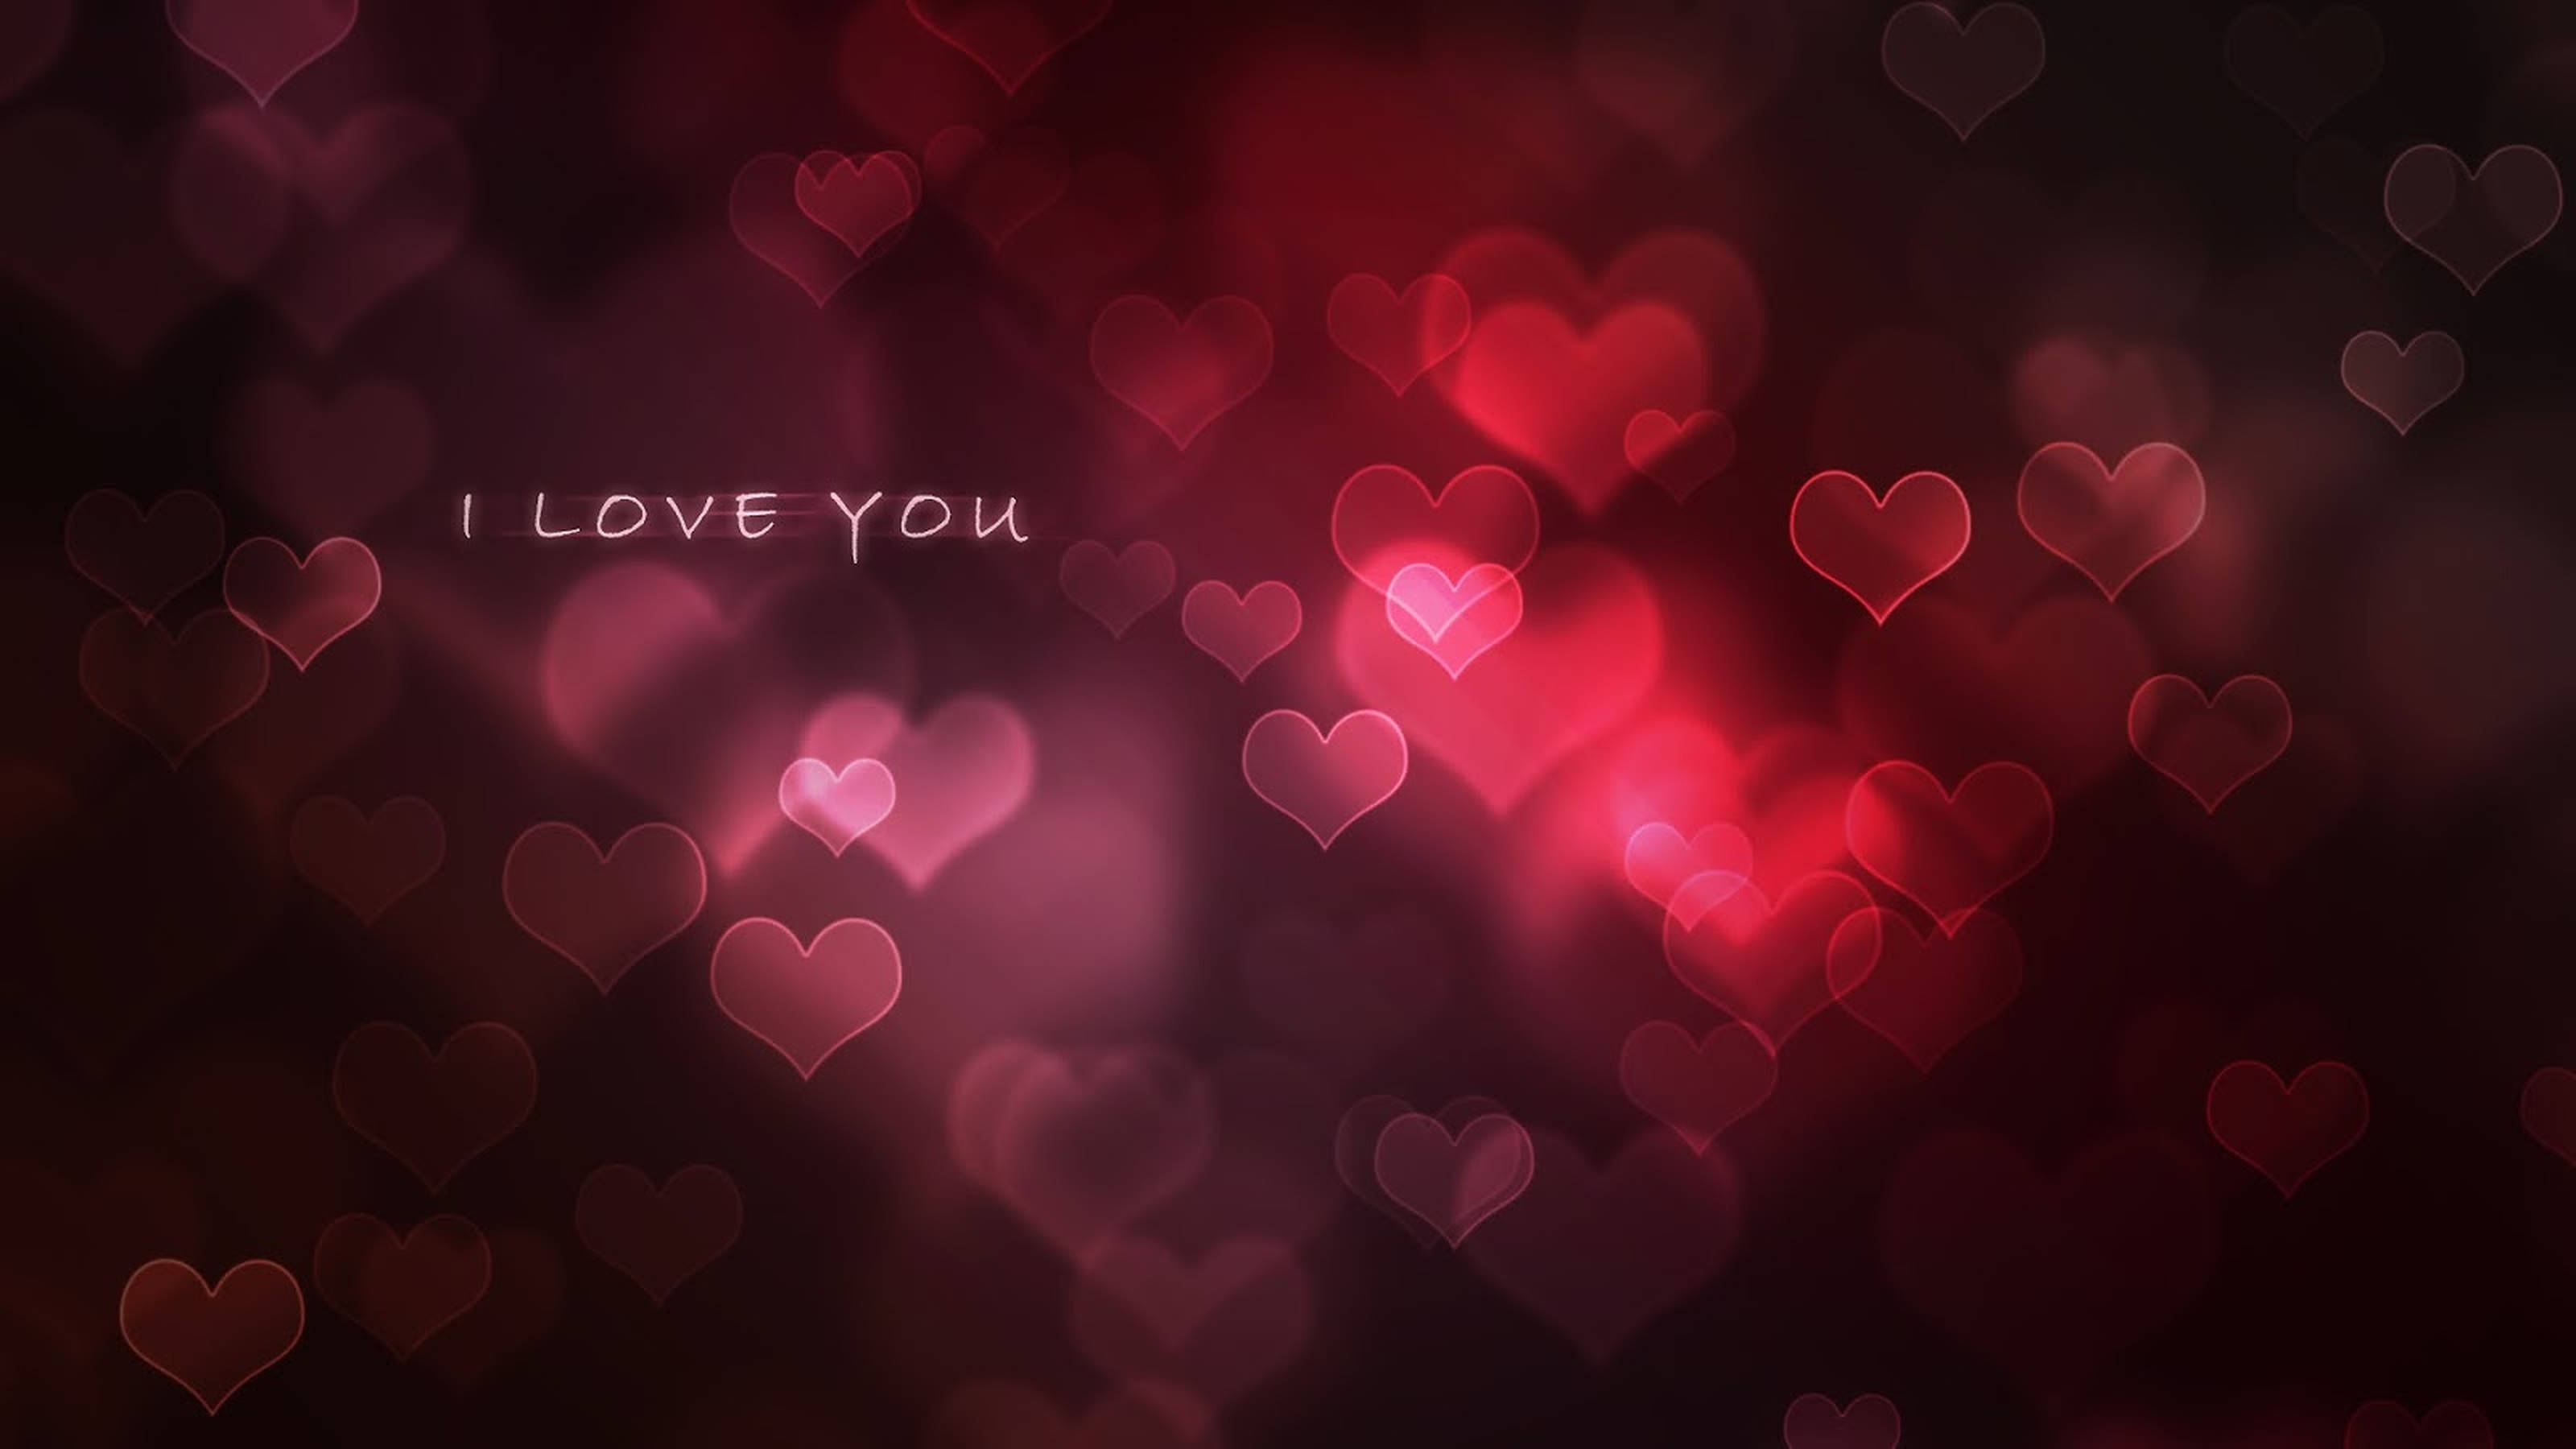 I Love You I Love You - I Love You With Hearts